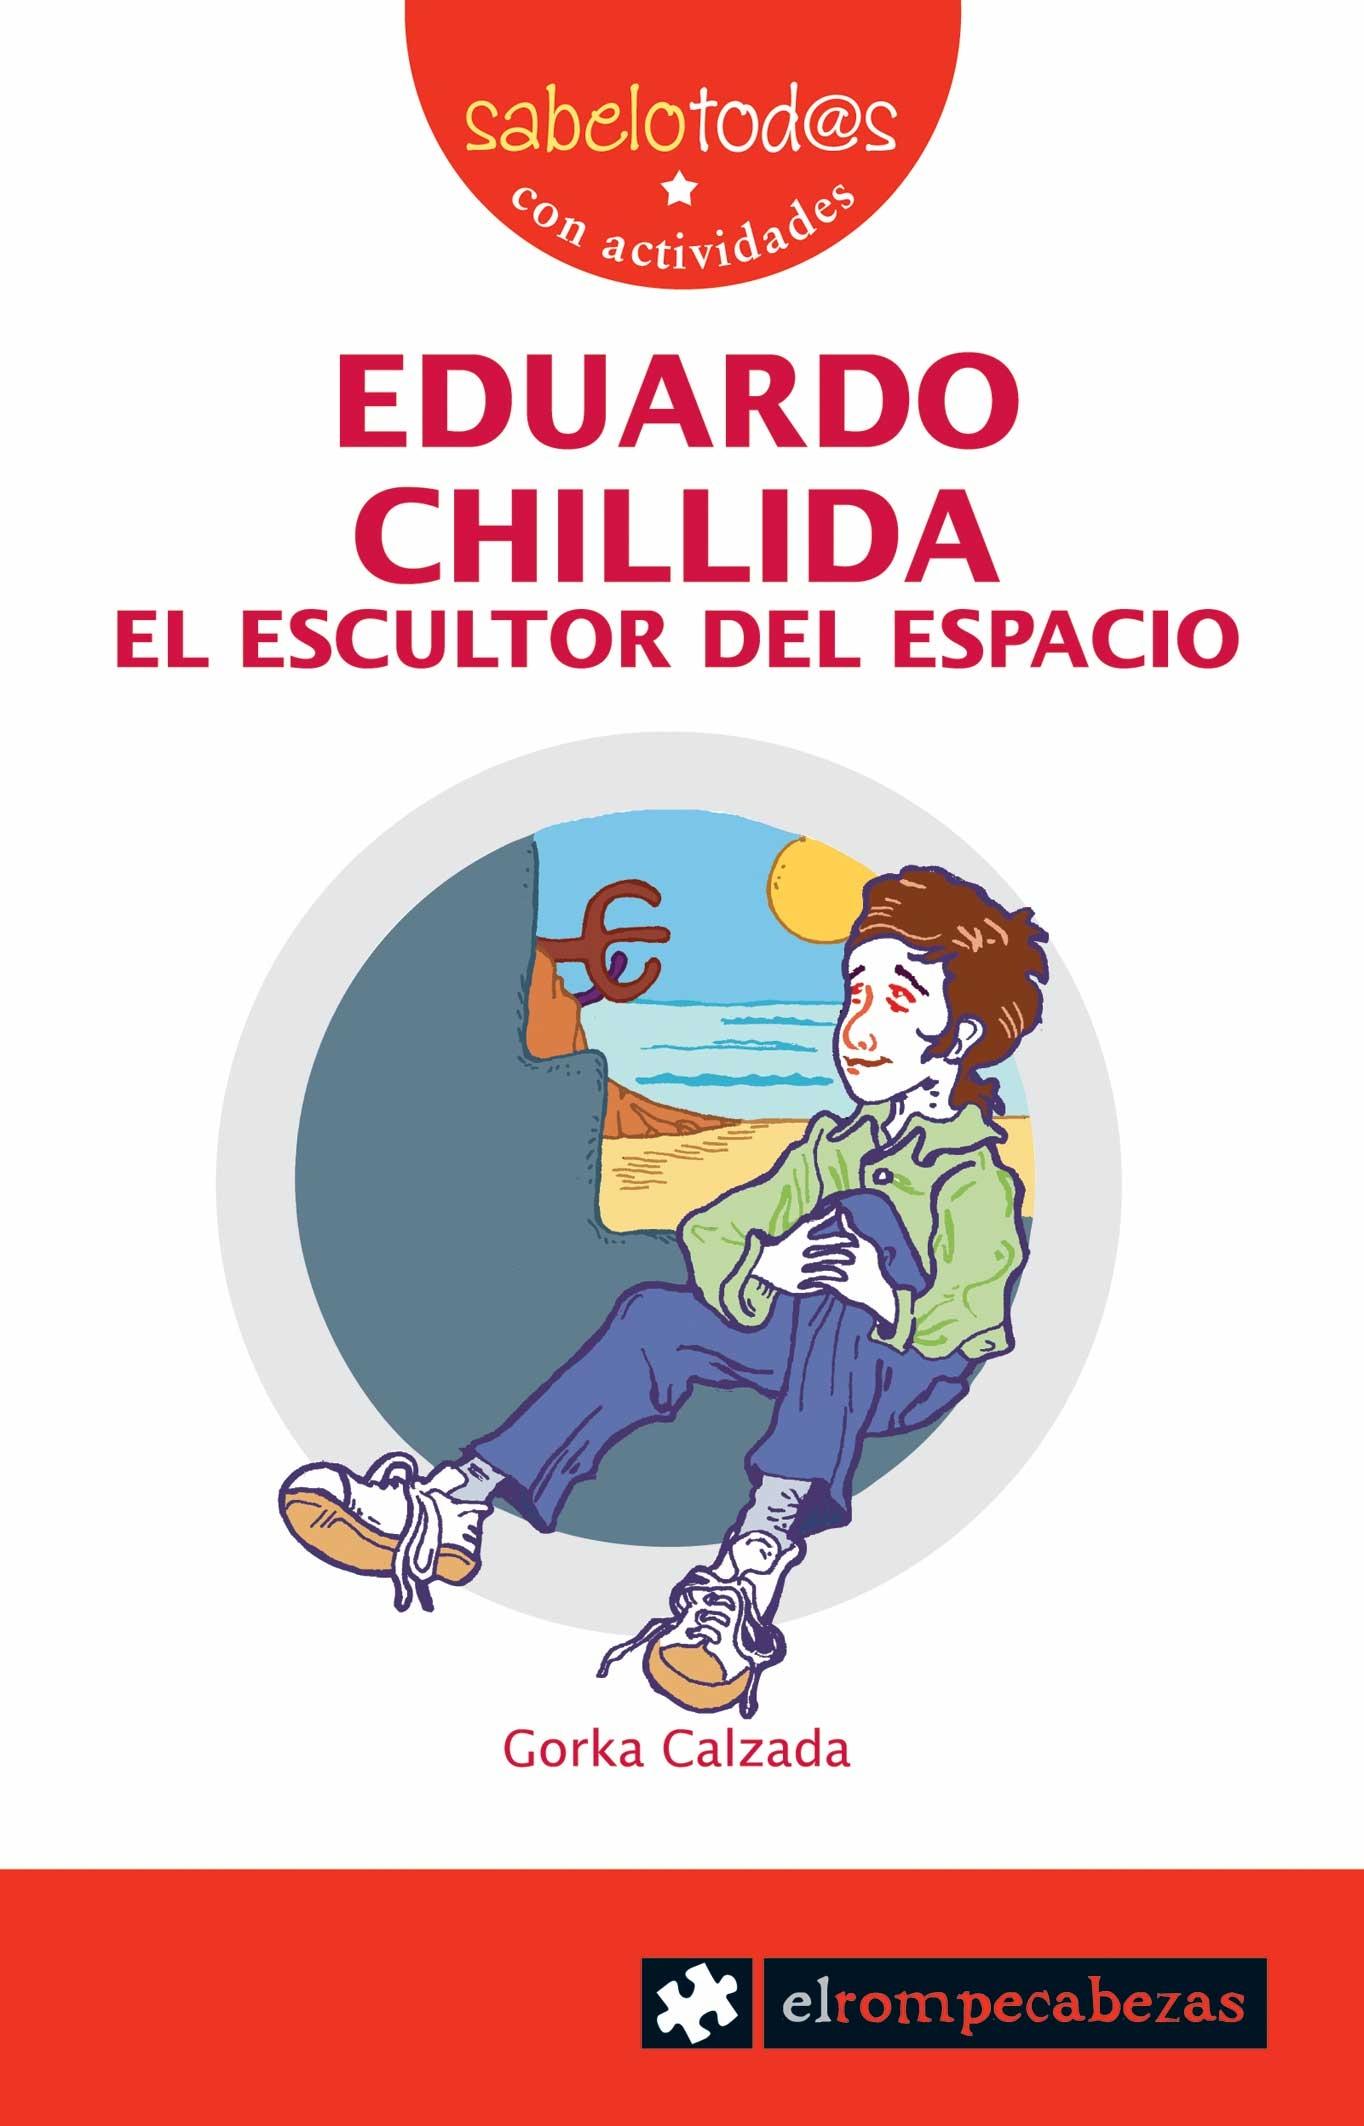 EDUARDO CHILLIDA, EL ESCULTOR DEL ESPACIO